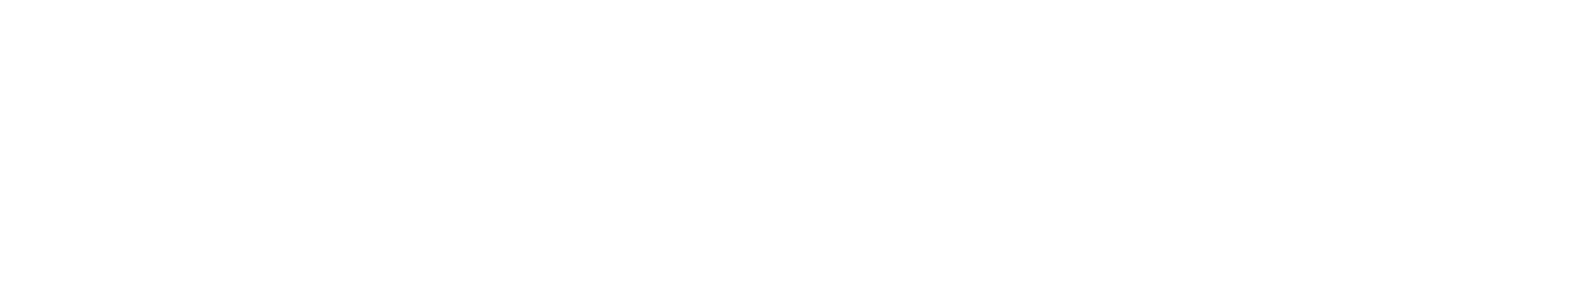 QUALCOMM logo large for dark backgrounds (transparent PNG)